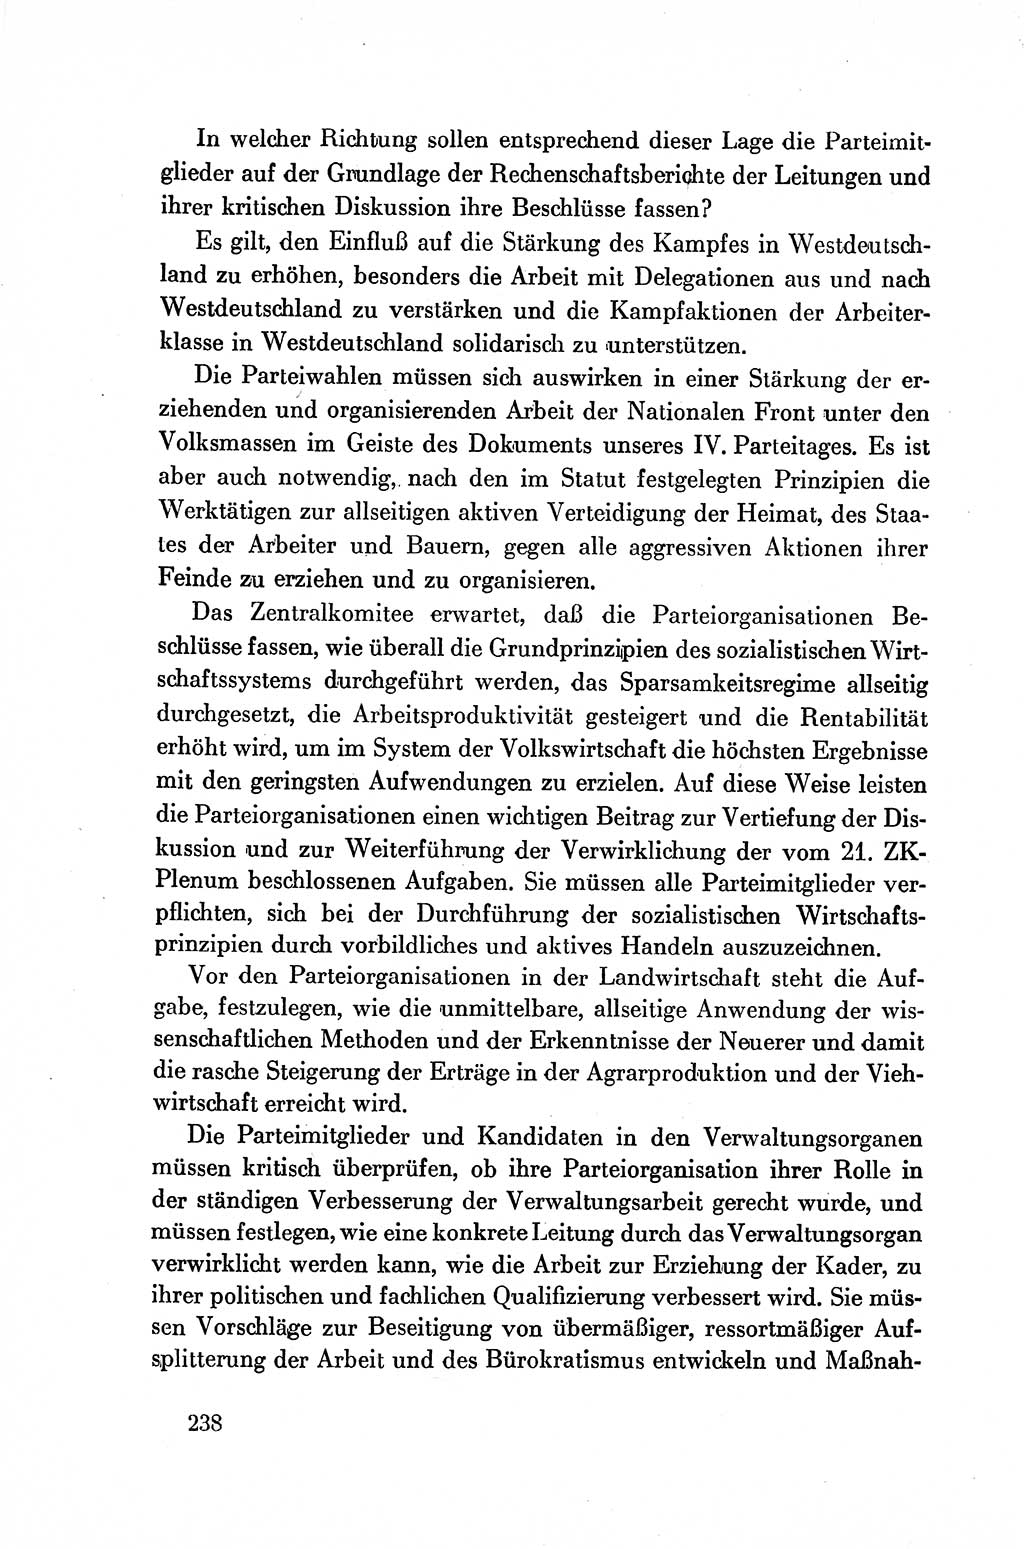 Dokumente der Sozialistischen Einheitspartei Deutschlands (SED) [Deutsche Demokratische Republik (DDR)] 1954-1955, Seite 238 (Dok. SED DDR 1954-1955, S. 238)